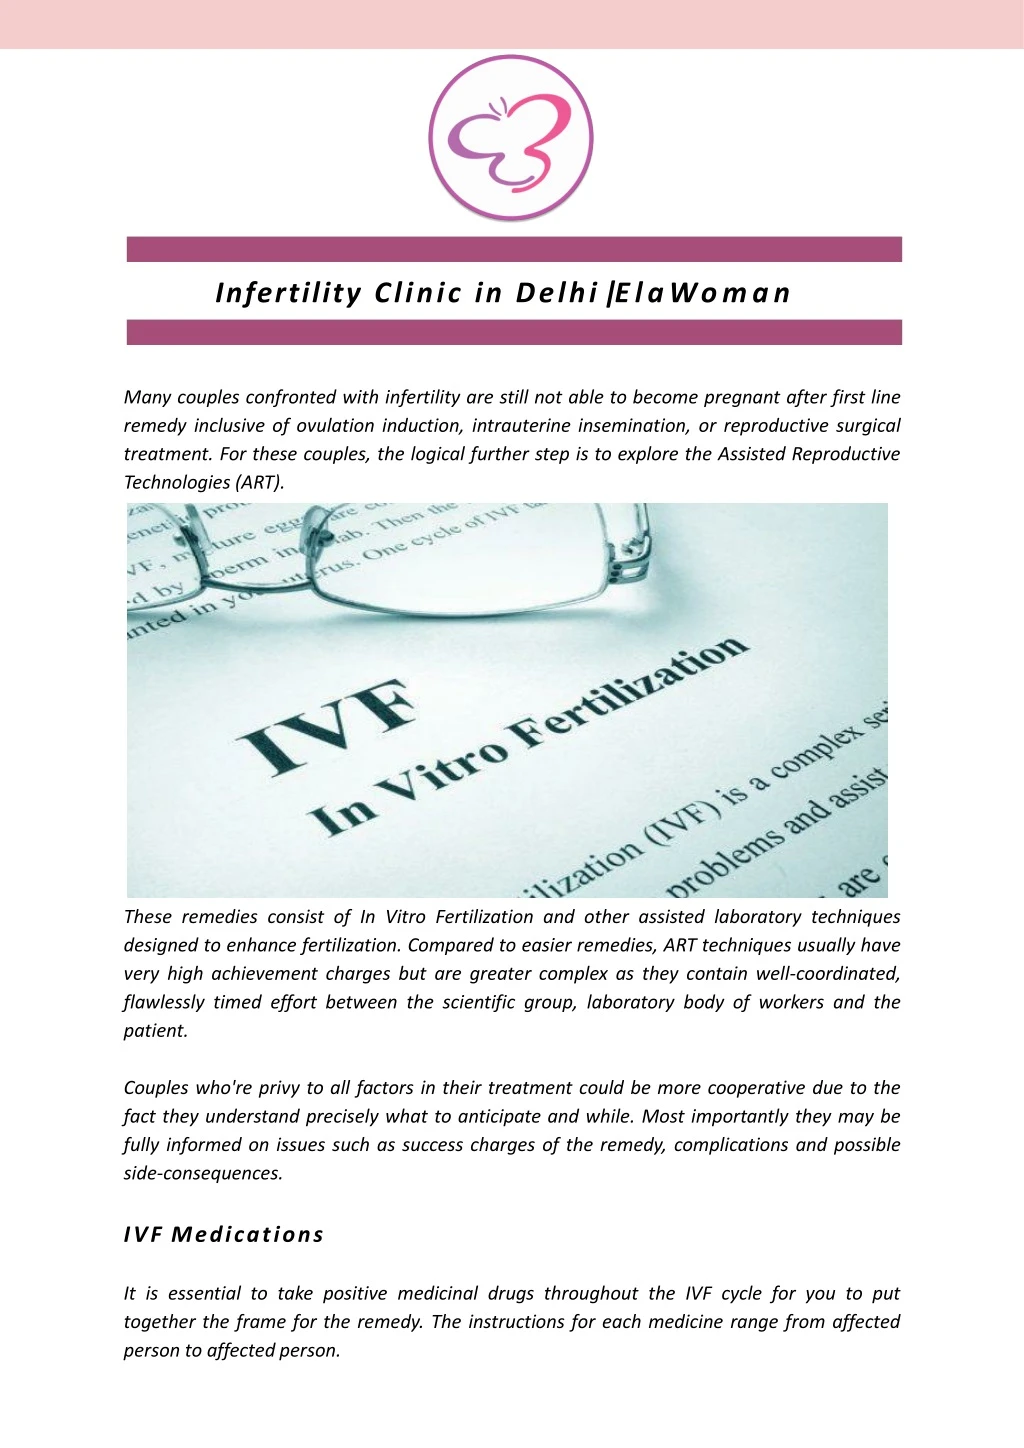 infertility clinic in delhi elawoman